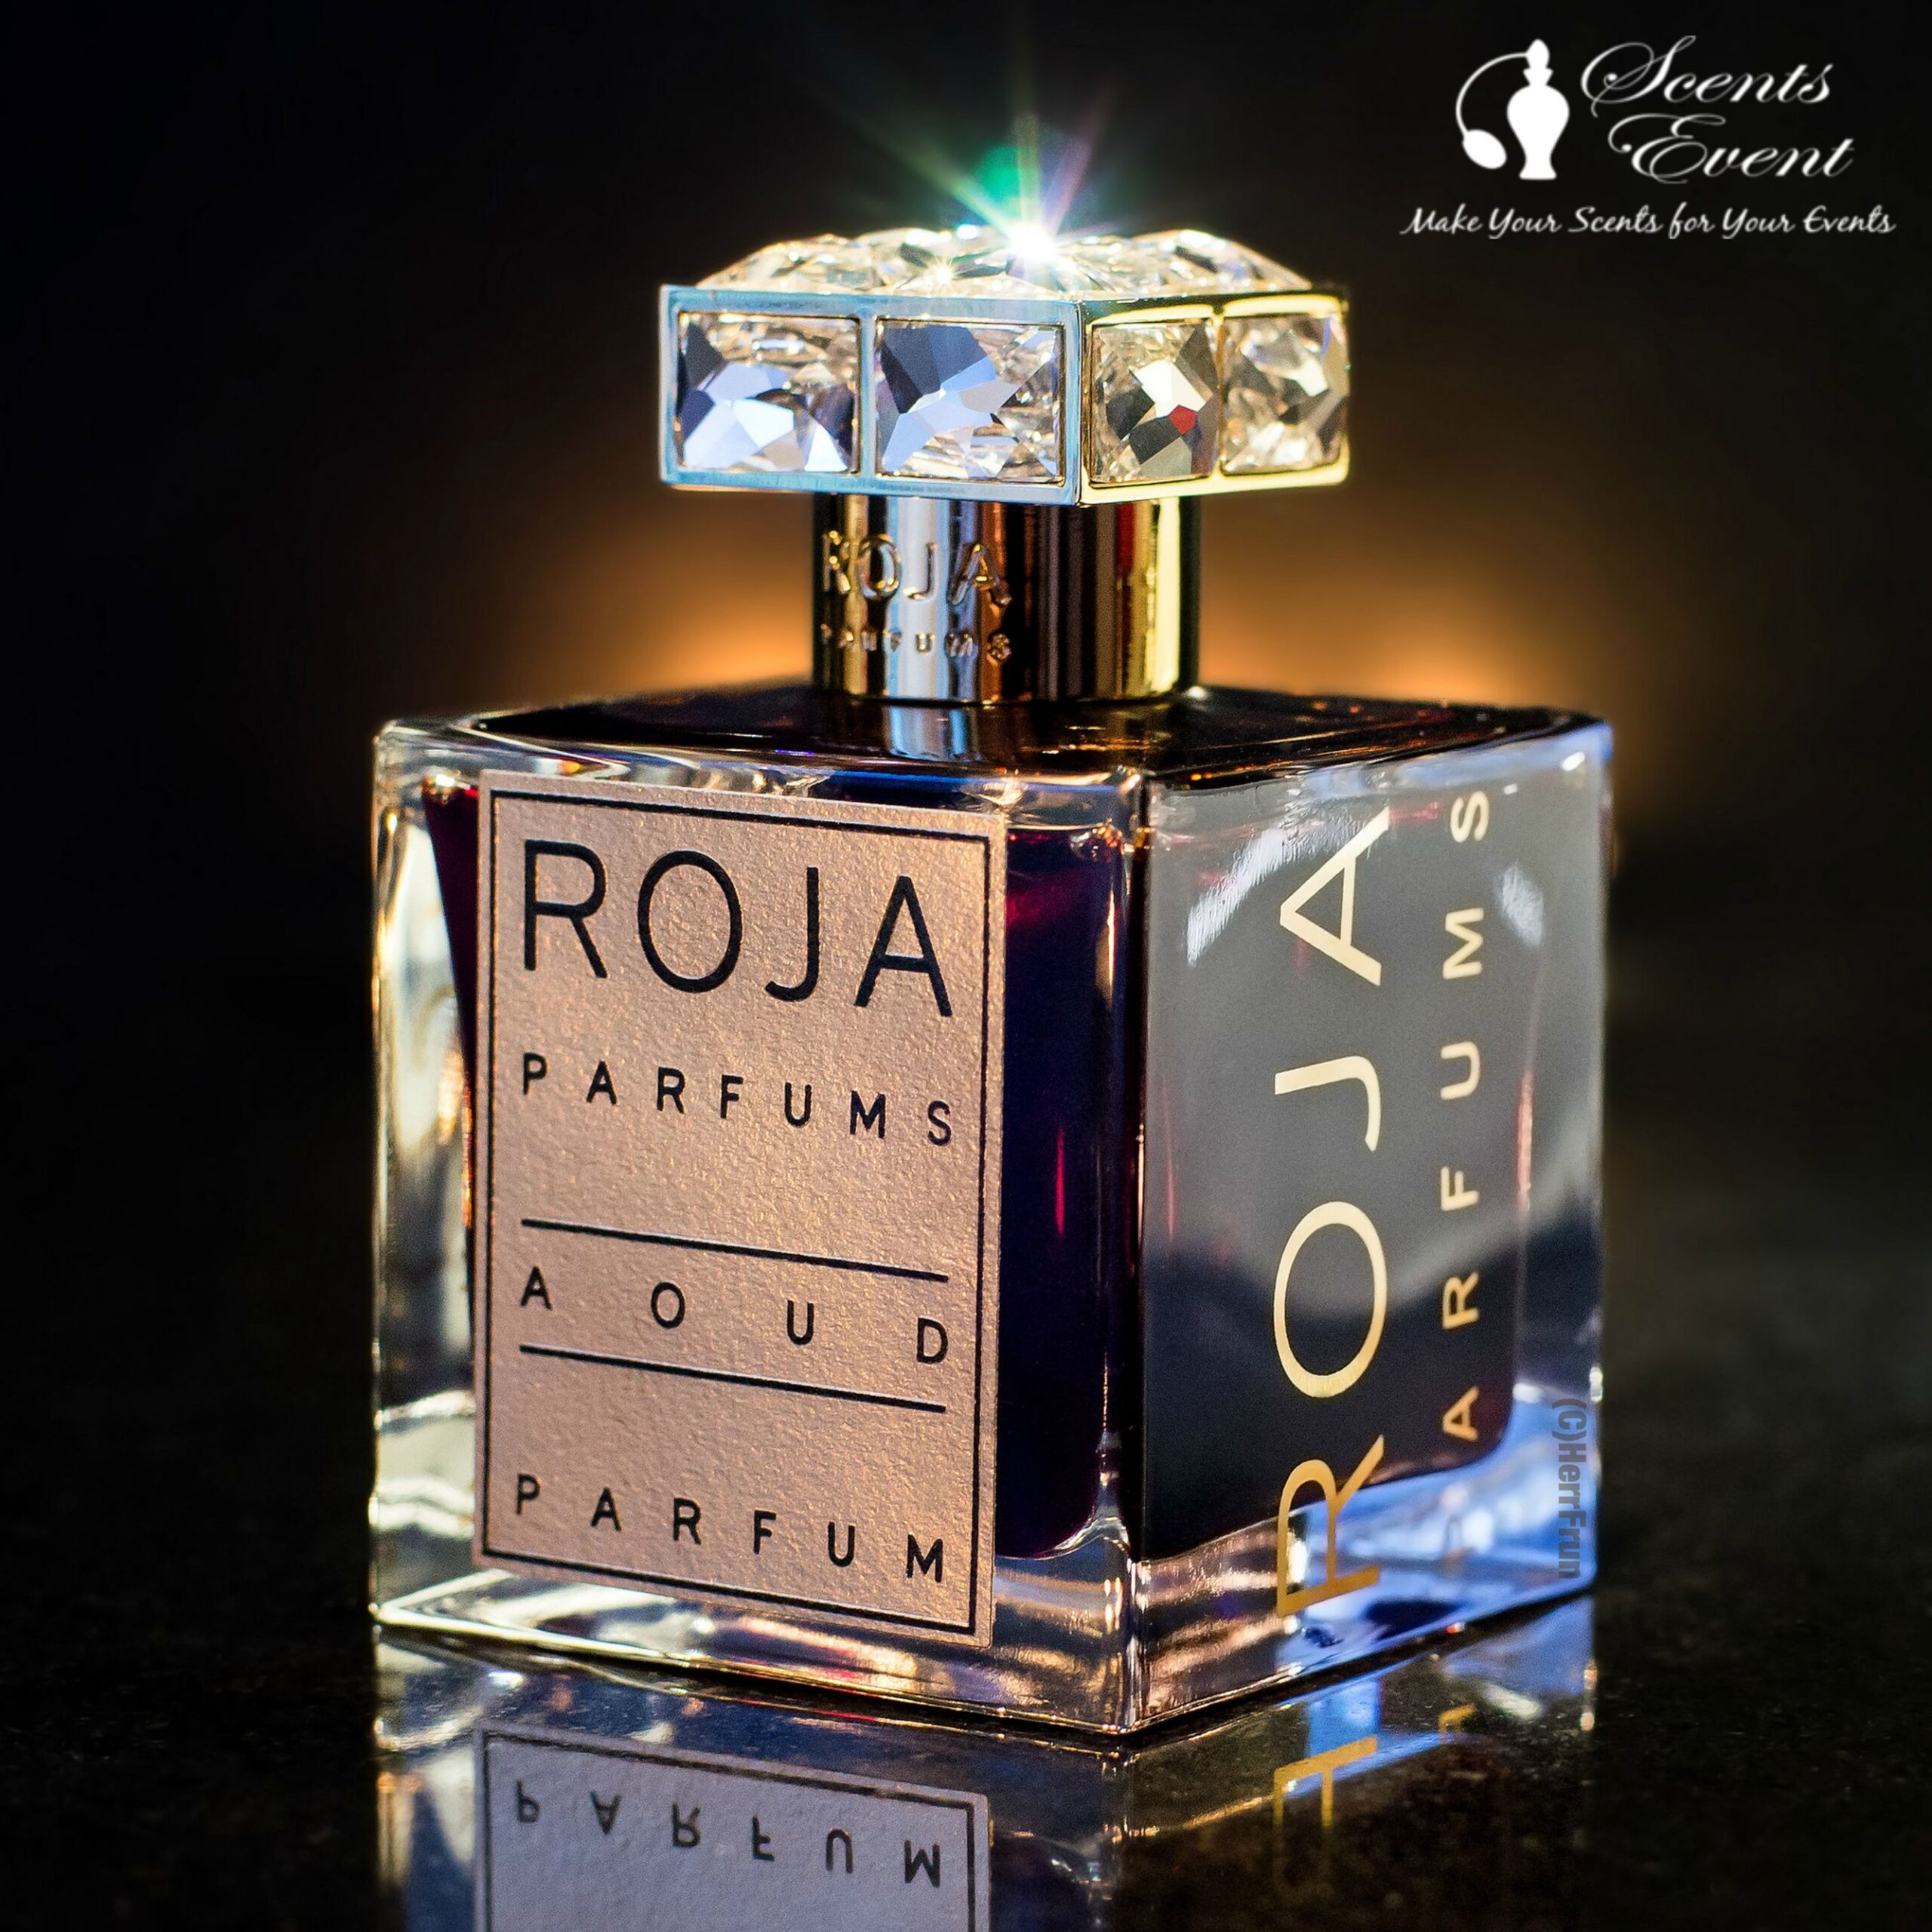 Roja Perfums Oud